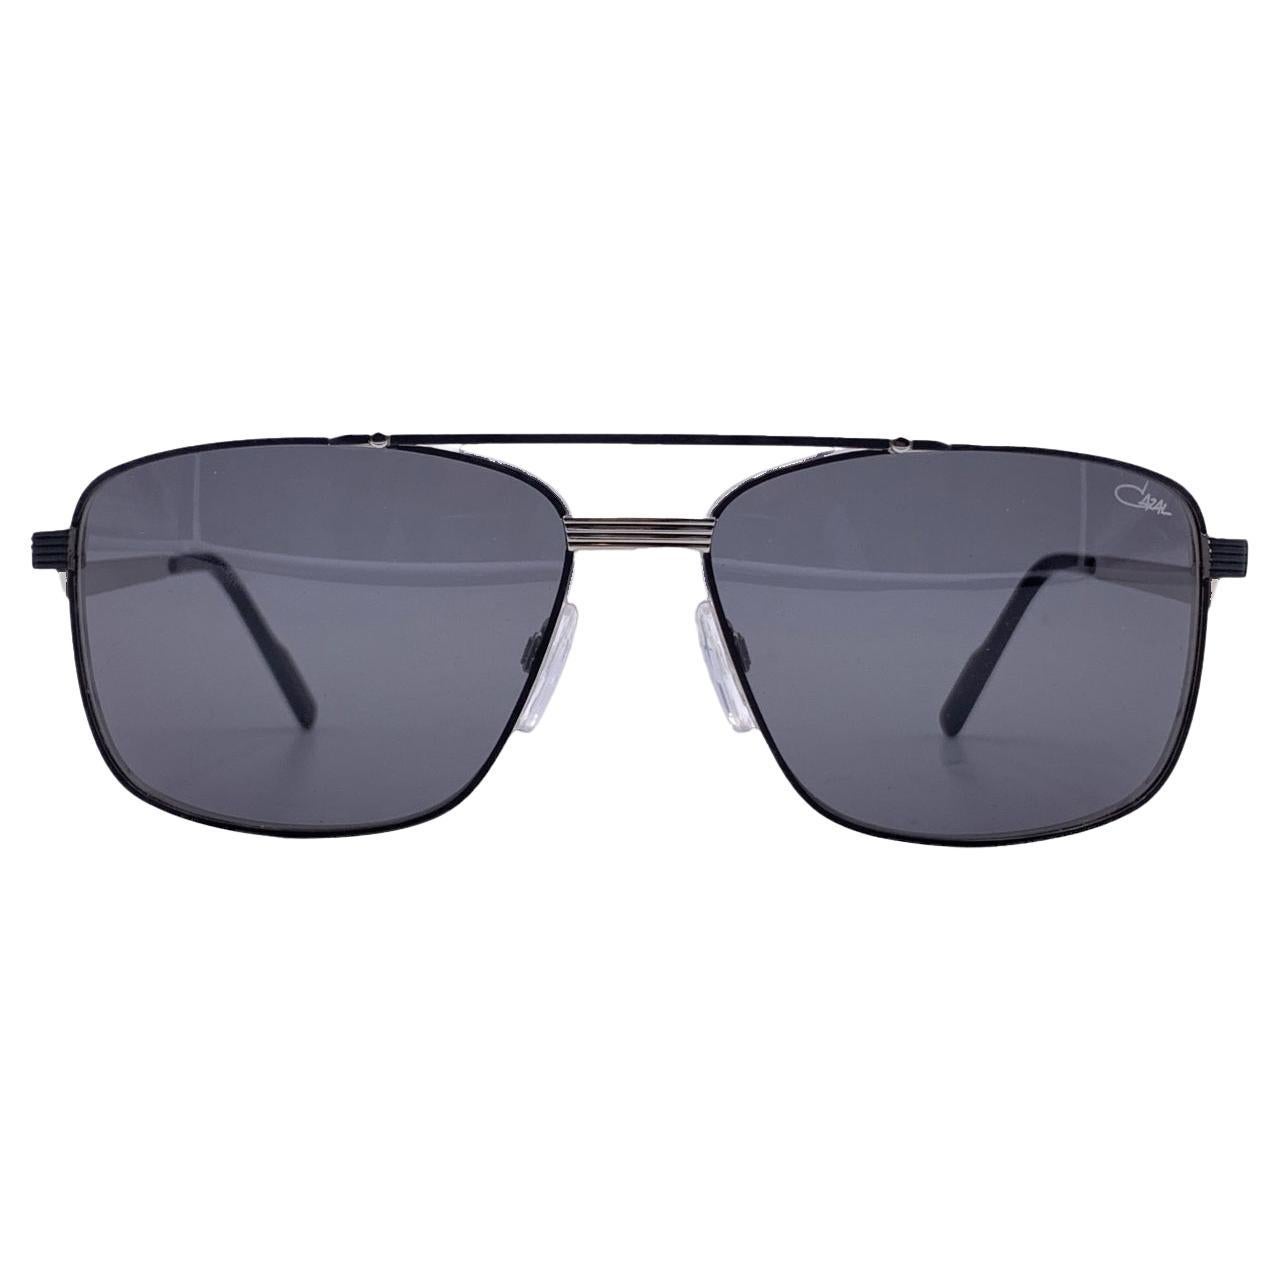 Aviator-Sonnenbrille aus schwarzem Metall Mod. 9101 002 63/16 140 mm